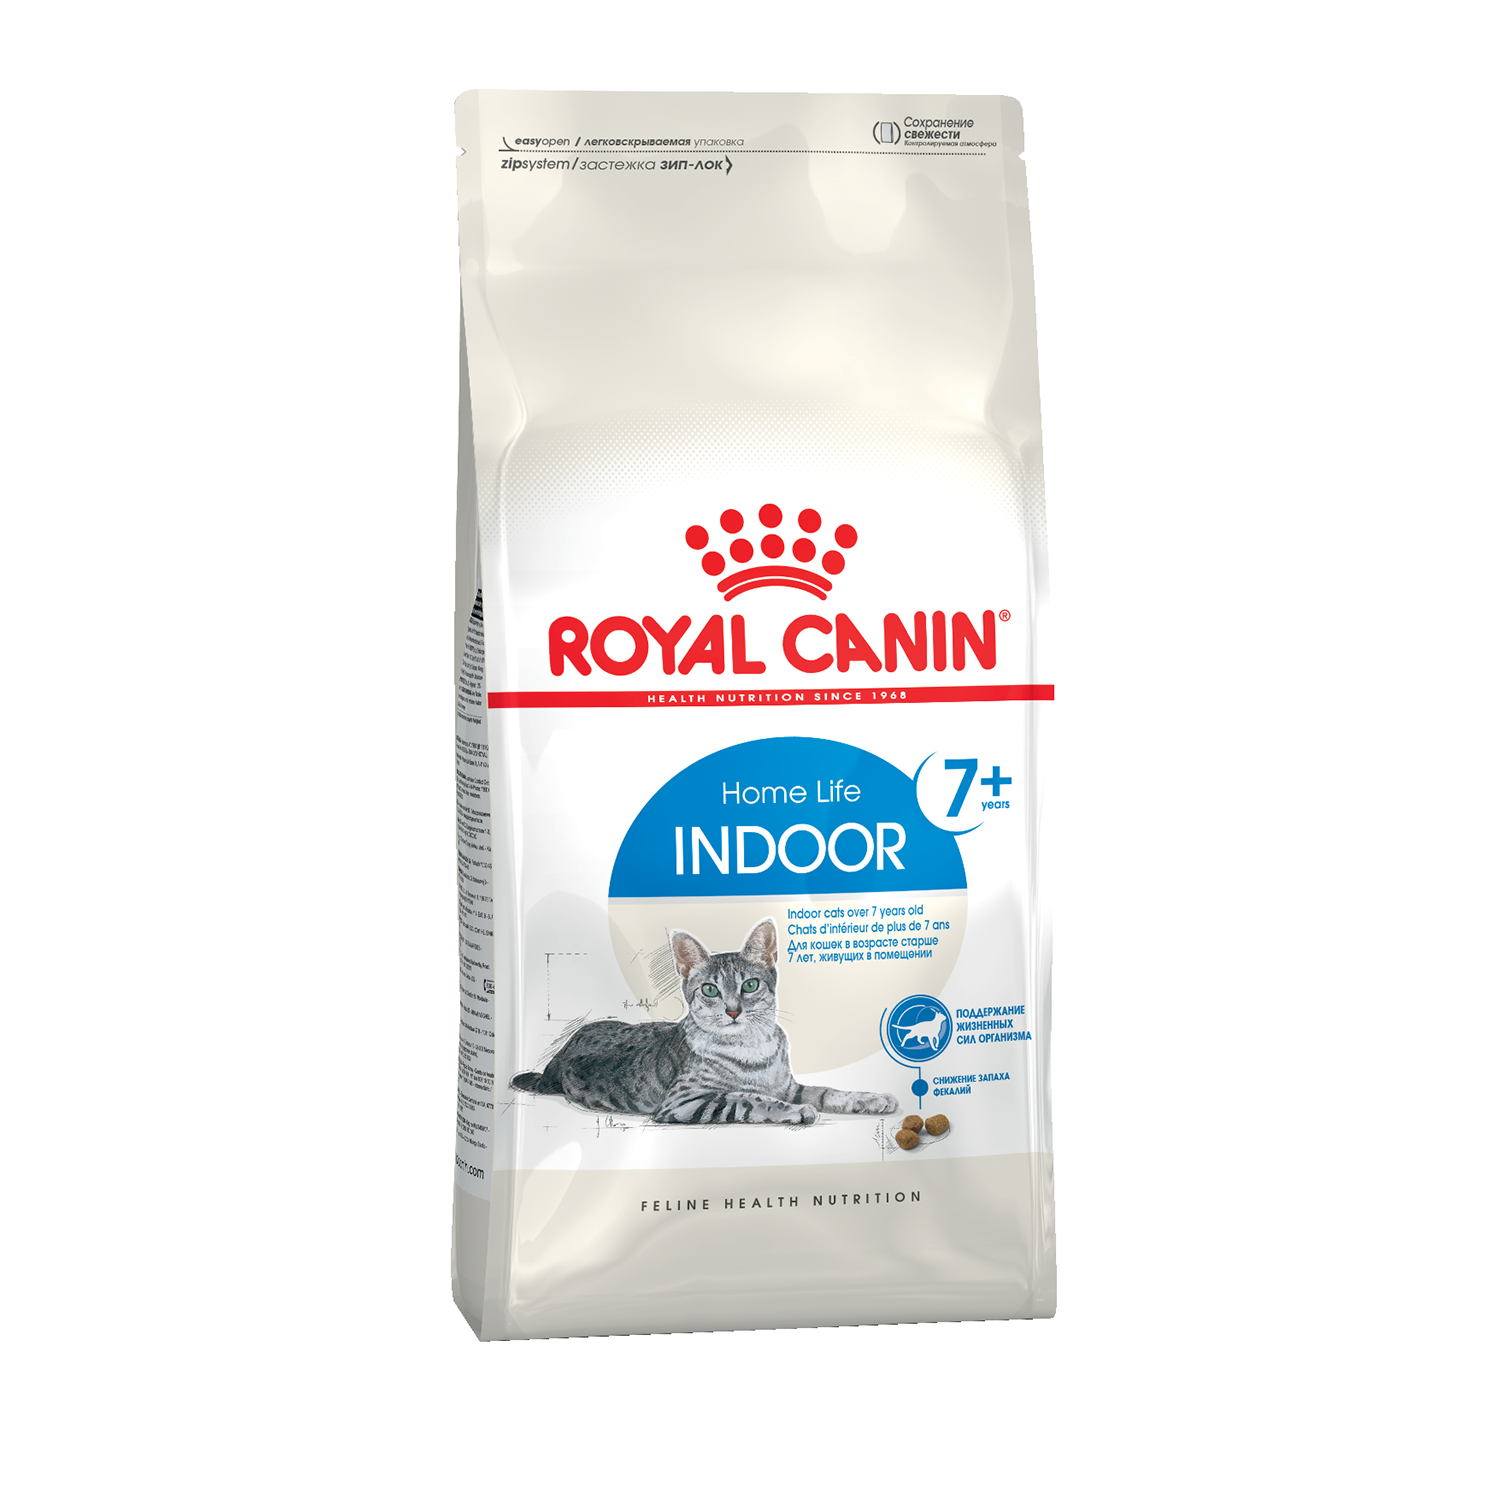 Сухой корм для кошек Royal Canin Indoor 7+, для пожилых, живущих в помещении 1,5 кг - купить в Мегамаркет Екб, цена на Мегамаркет